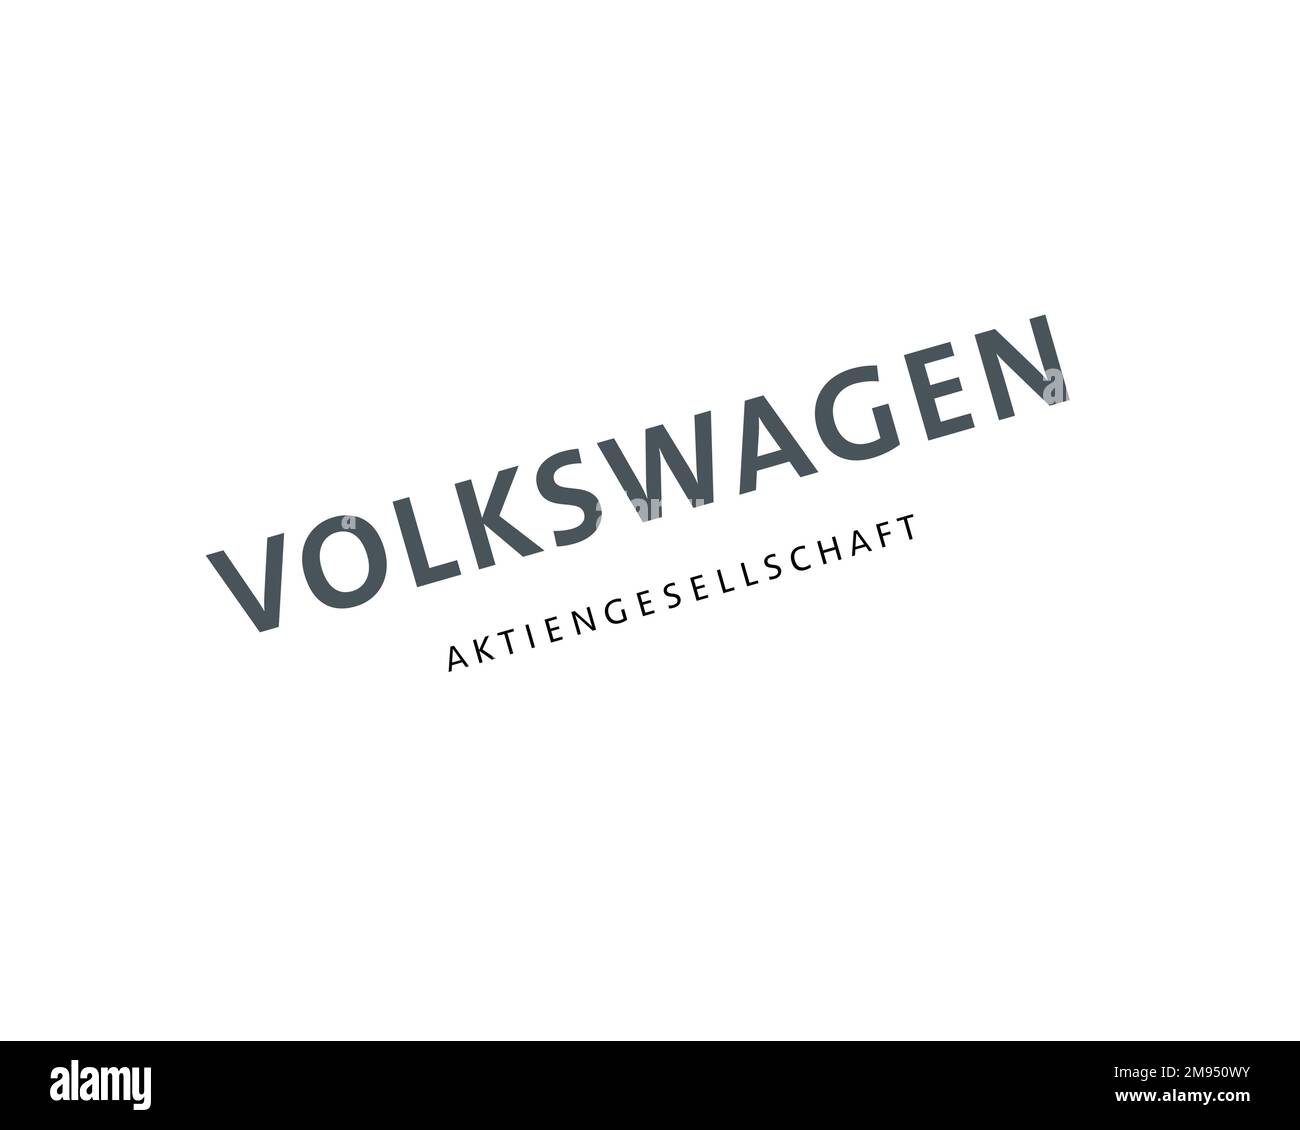 Volkswagen Group, logo pivoté, fond blanc Banque D'Images